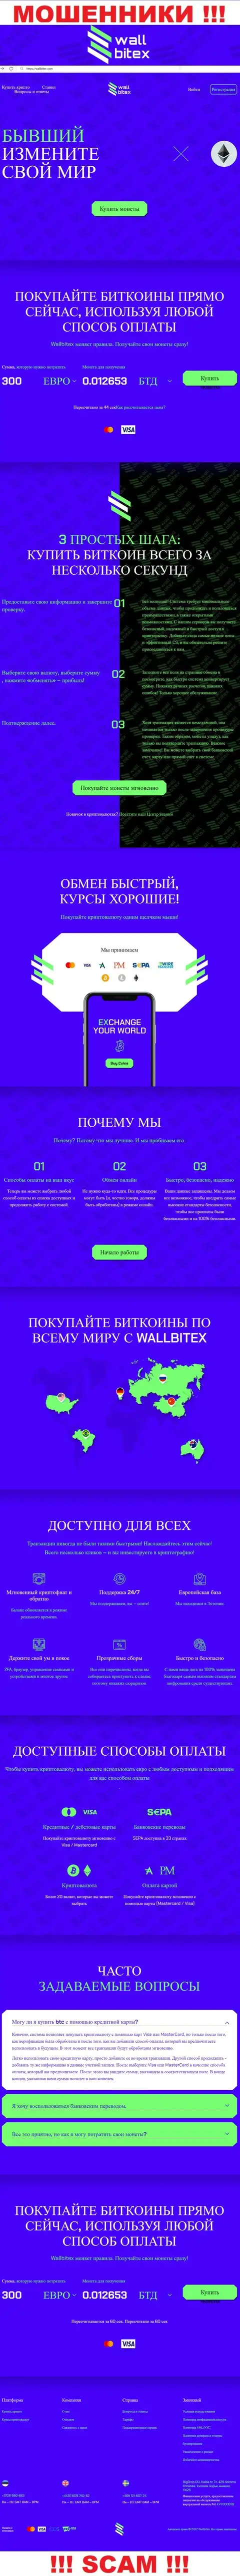 WallBitex Com - это официальный информационный портал противозаконно действующей компании WallBitex